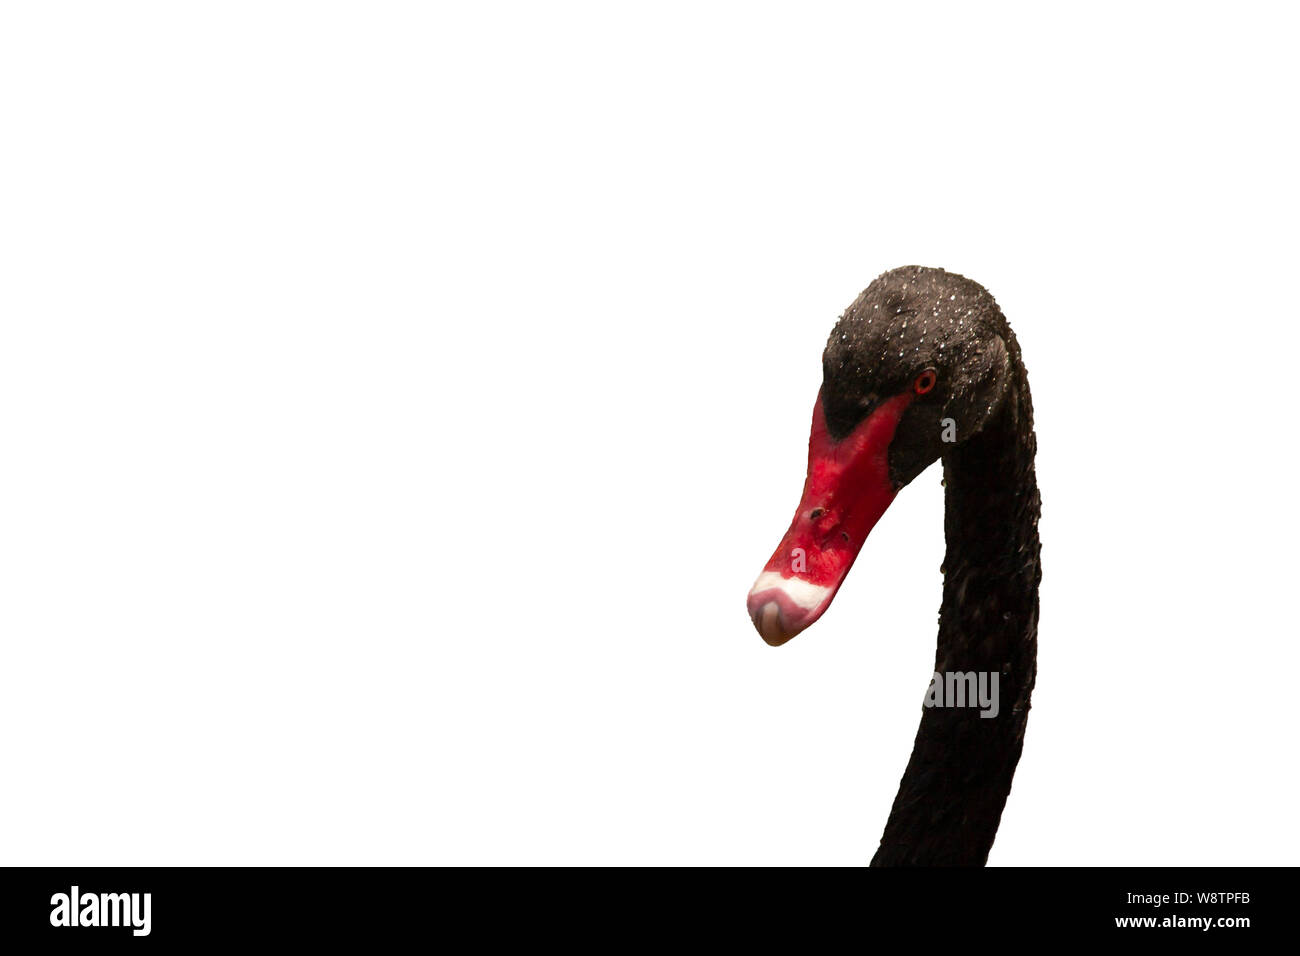 Recorte de un cisne negro cabeza con gotas de agua sobre su cabeza y cuello. El cisne tiene un pico rojo con una punta blanca. Foto de stock